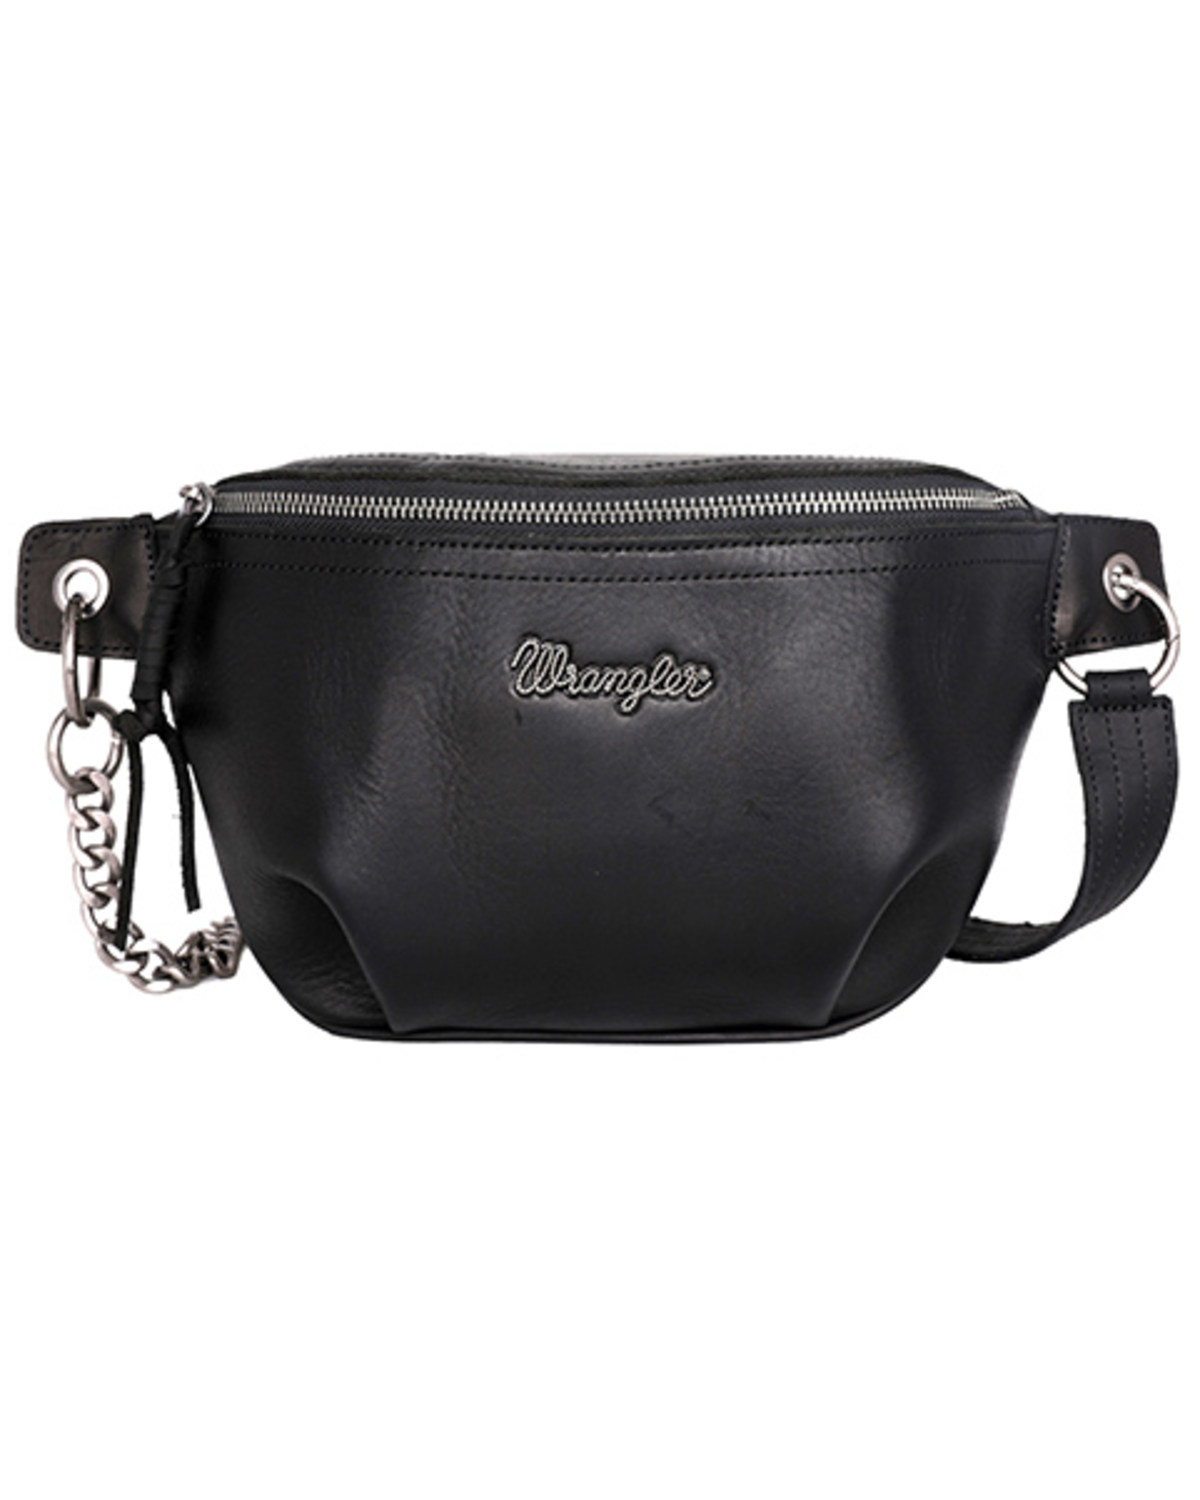 Wrangler Women's Adjustable Belt Bag